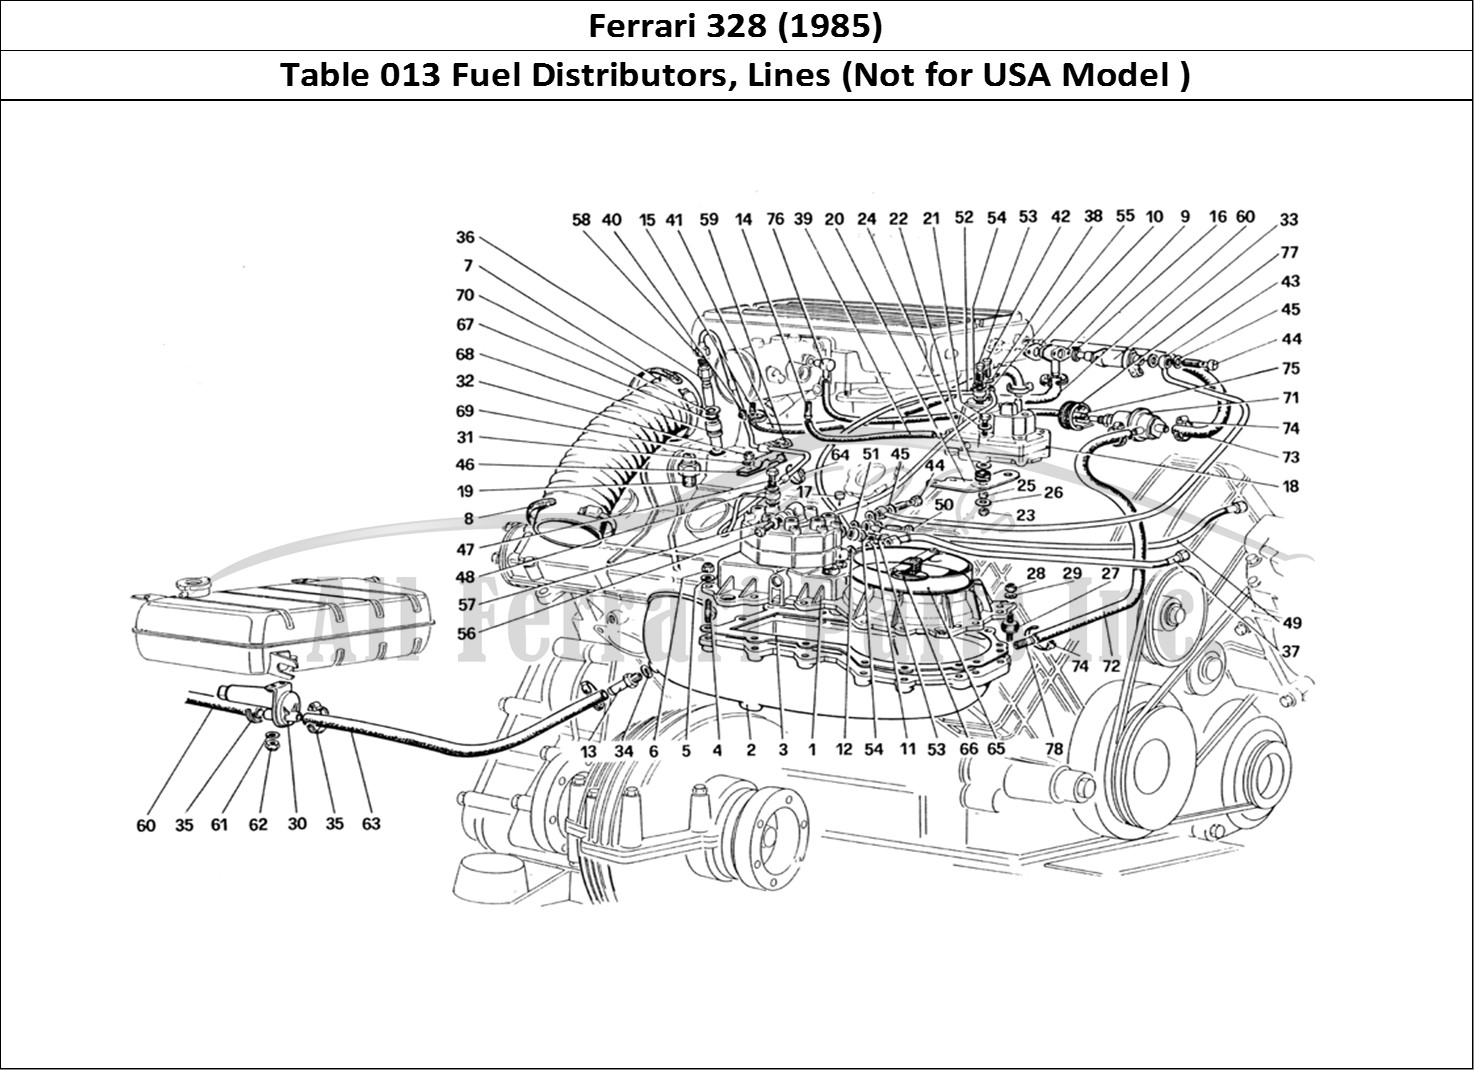 Ferrari Parts Ferrari 328 (1985) Page 013 Fuel Distributors Lines (